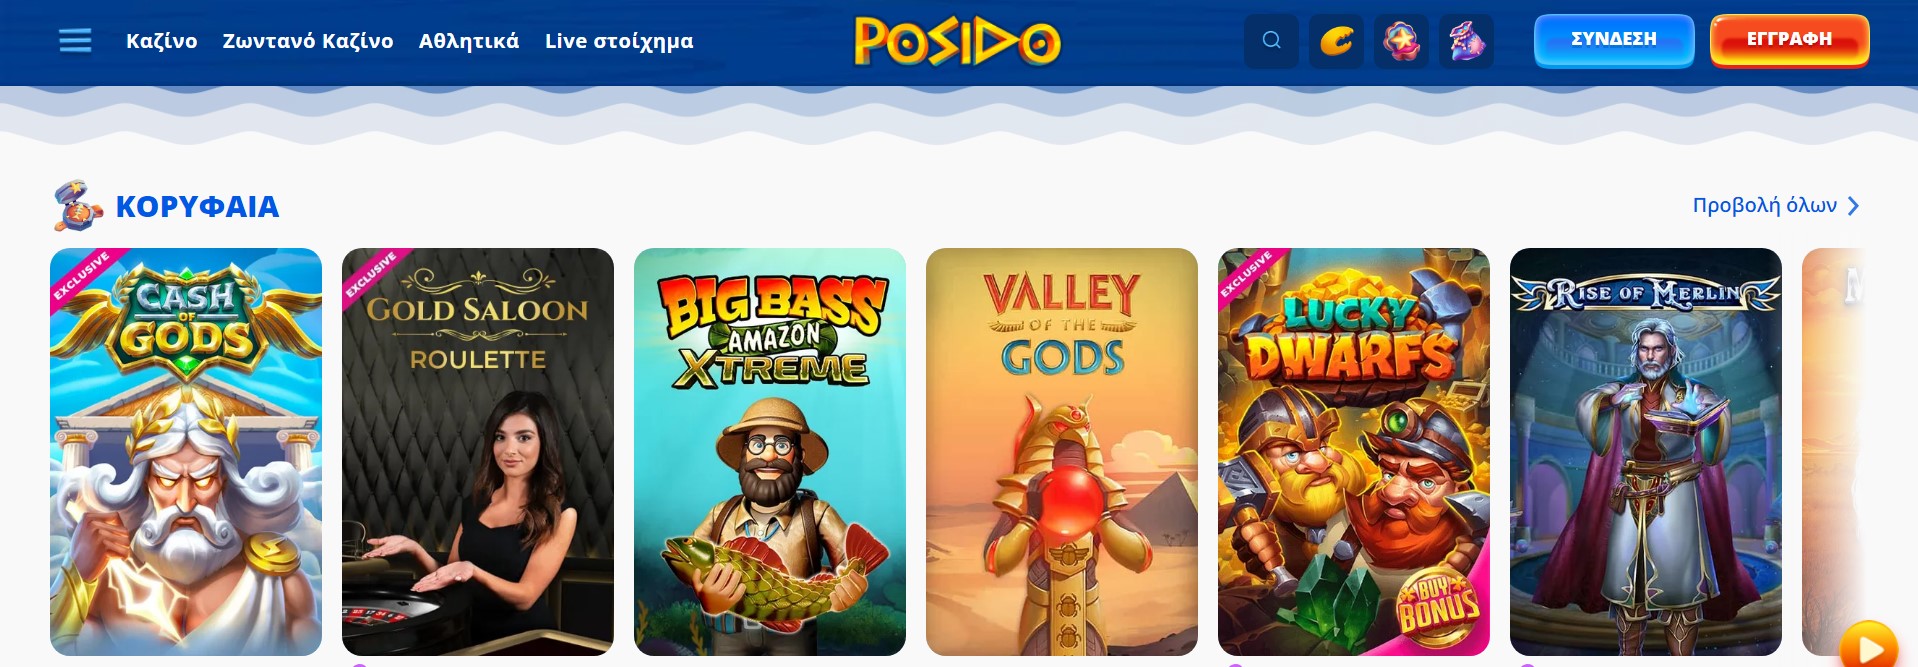 Ποια παιχνίδια μπορείτε να παίξετε στο Posido Casino;